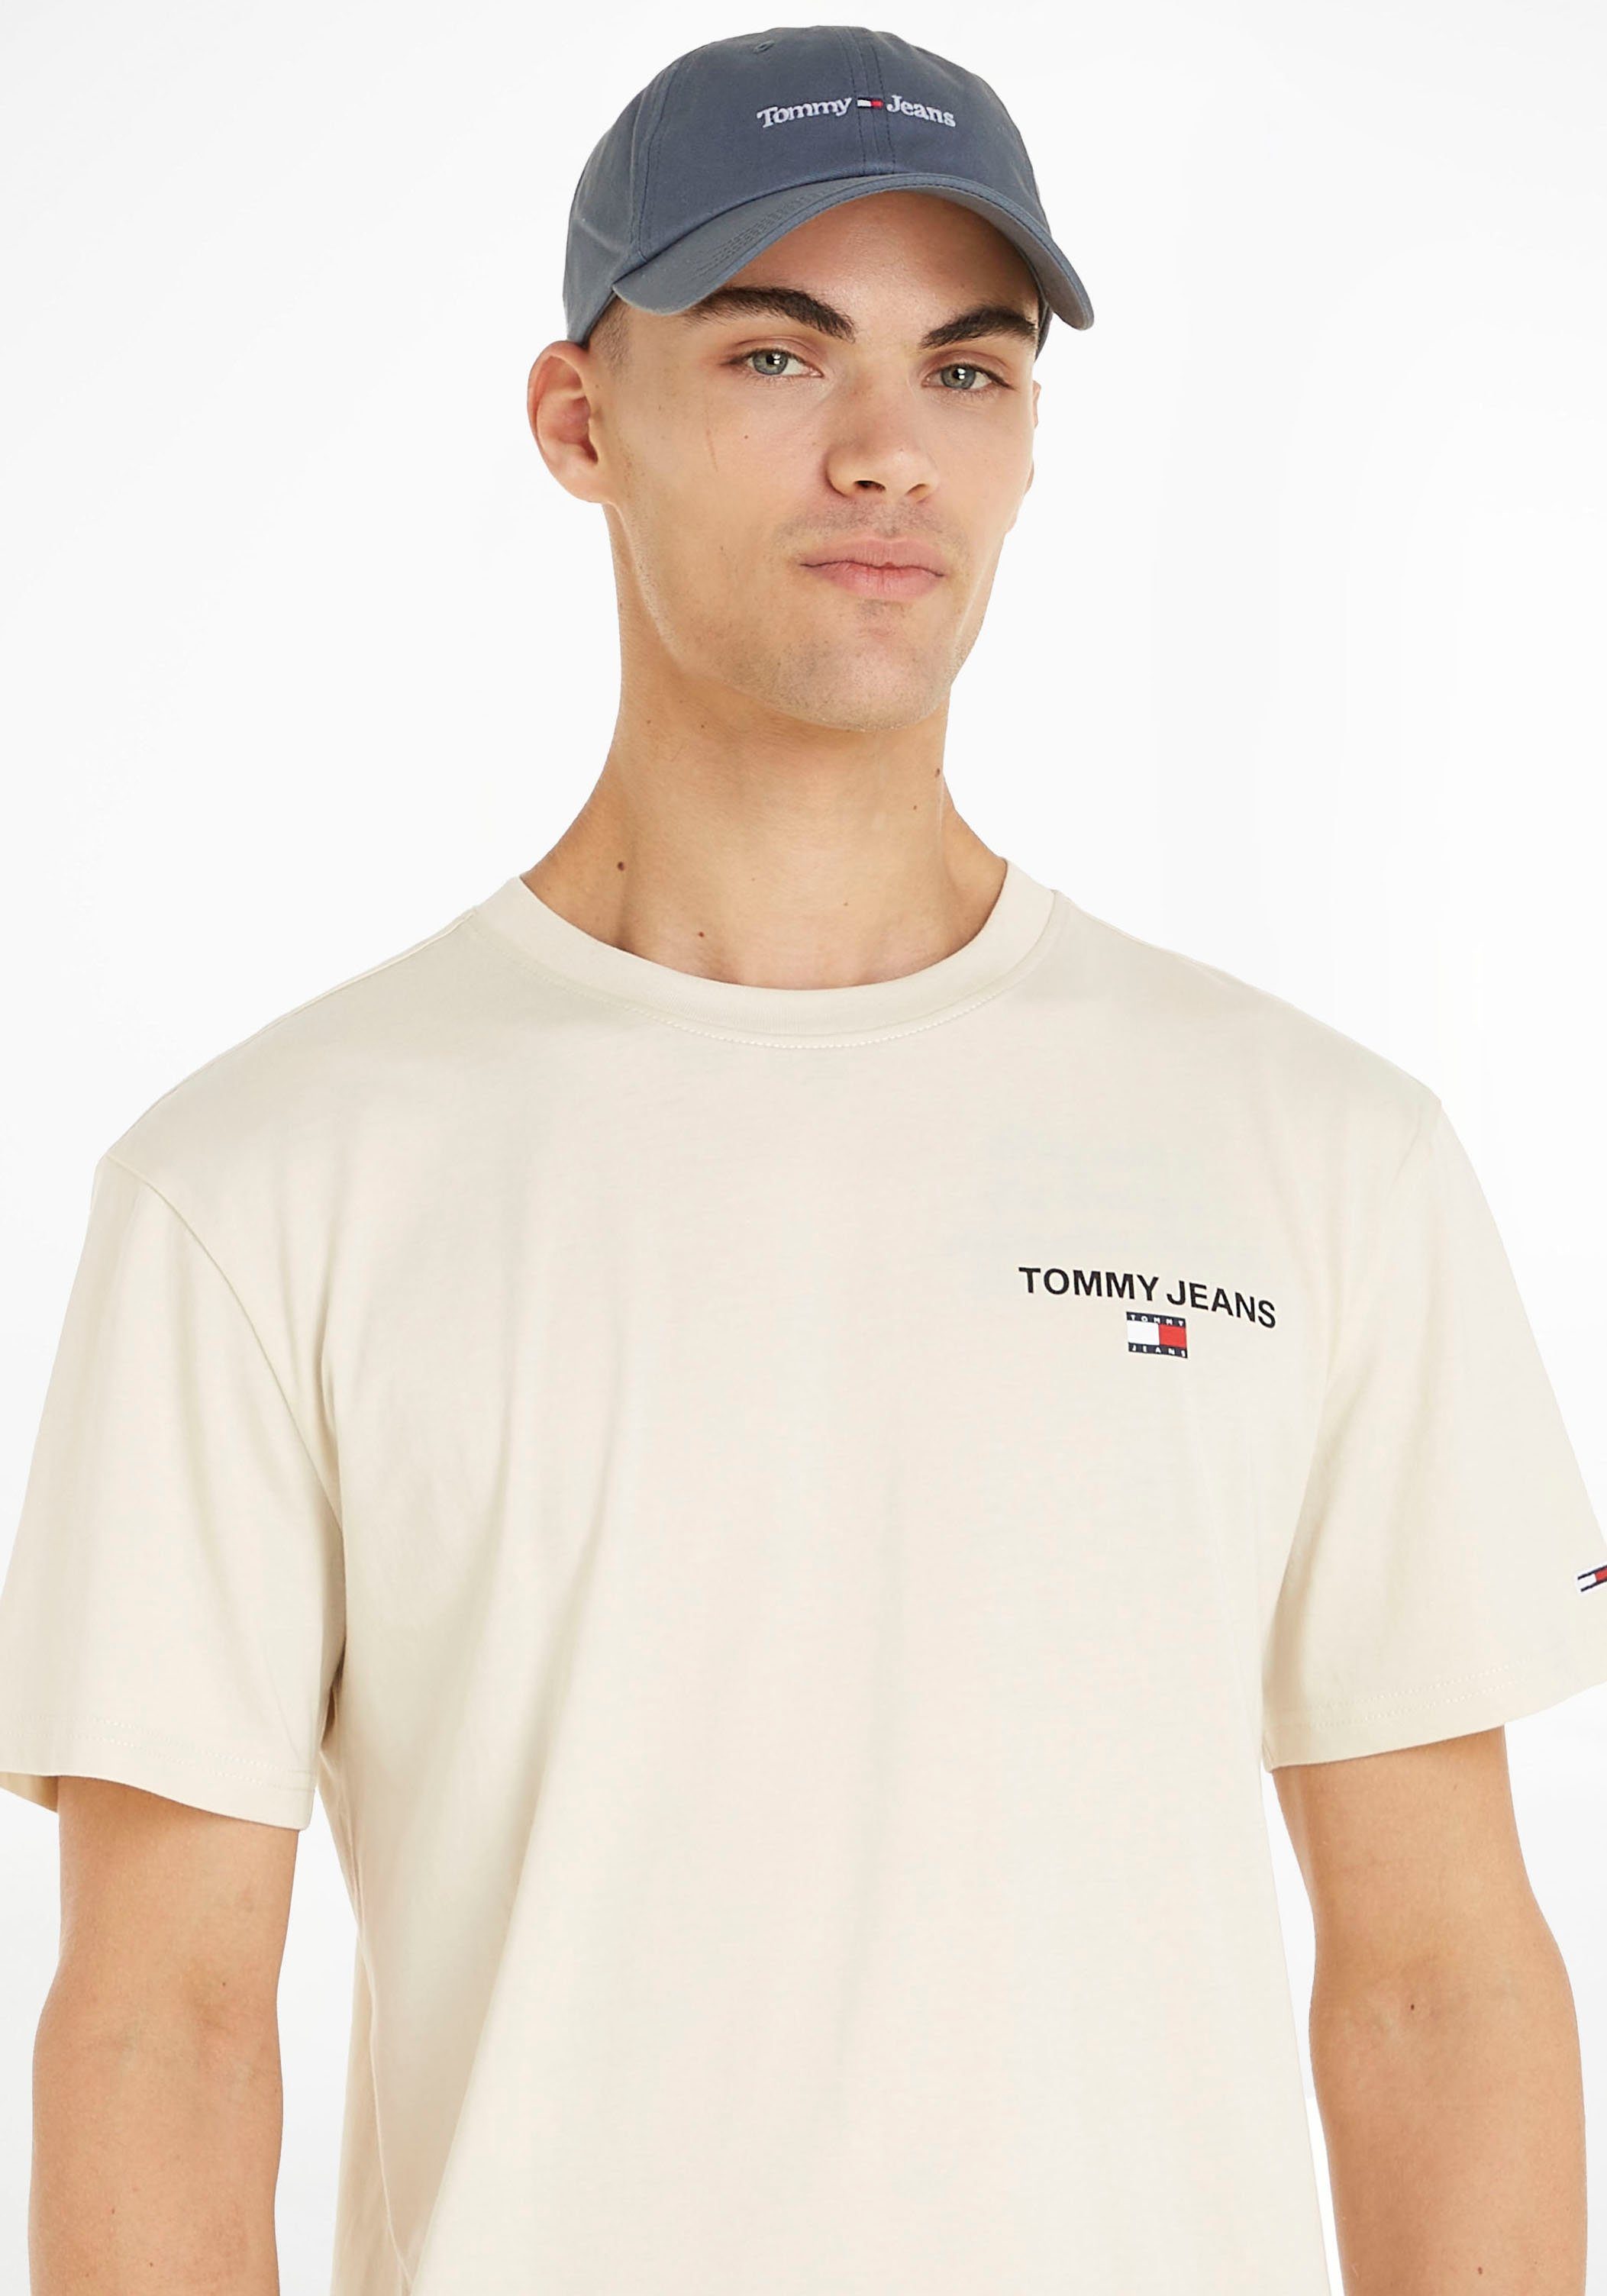 [Sie können echte Produkte zu günstigen Preisen kaufen!] Tommy Jeans dezentem mit Steel Superior Logo-Branding Cap Baseball